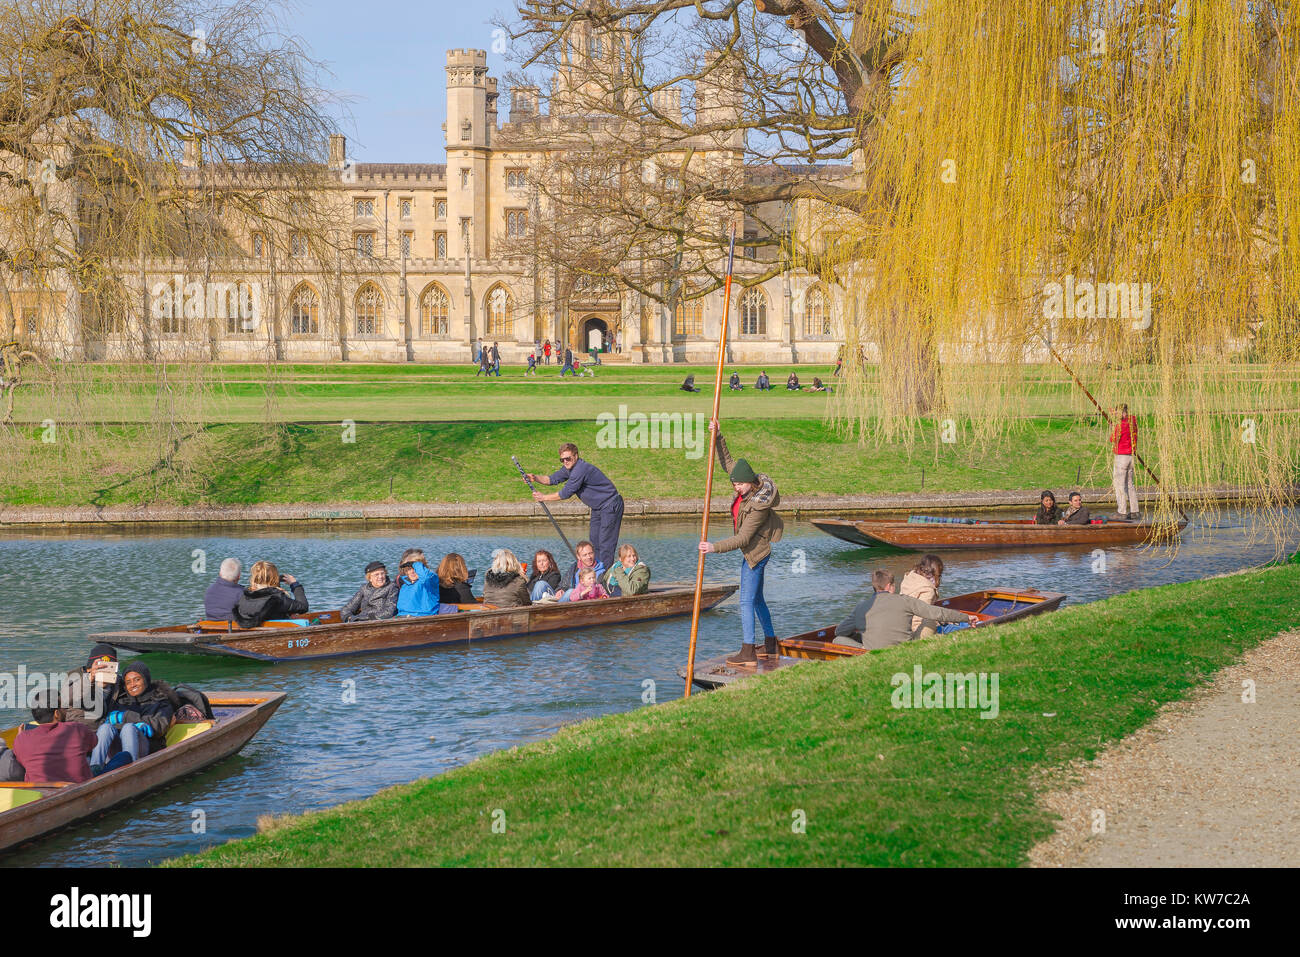 Cambridge UK stochern, an einem Frühlingsmorgen in Cambridge, Großbritannien, Touristen, unternehmen Sie einen Ausflug in einen Stocherkahn auf dem Fluss Cam, Segelfliegen Vergangenheit St John's College. Stockfoto